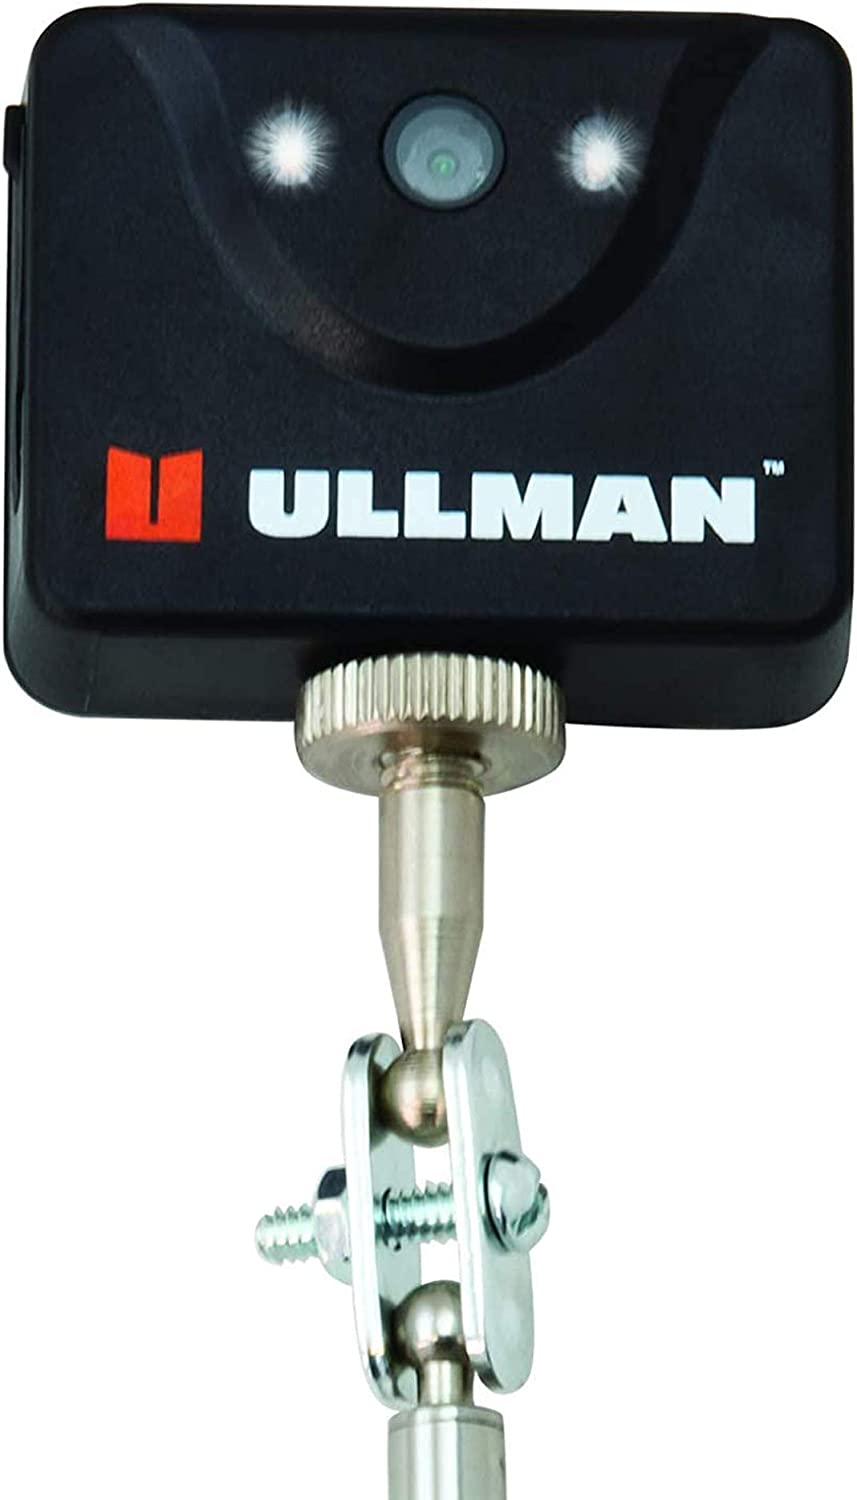 Ullman E-DM-1MB Digital Diagnostic Mirror - MPR Tools & Equipment